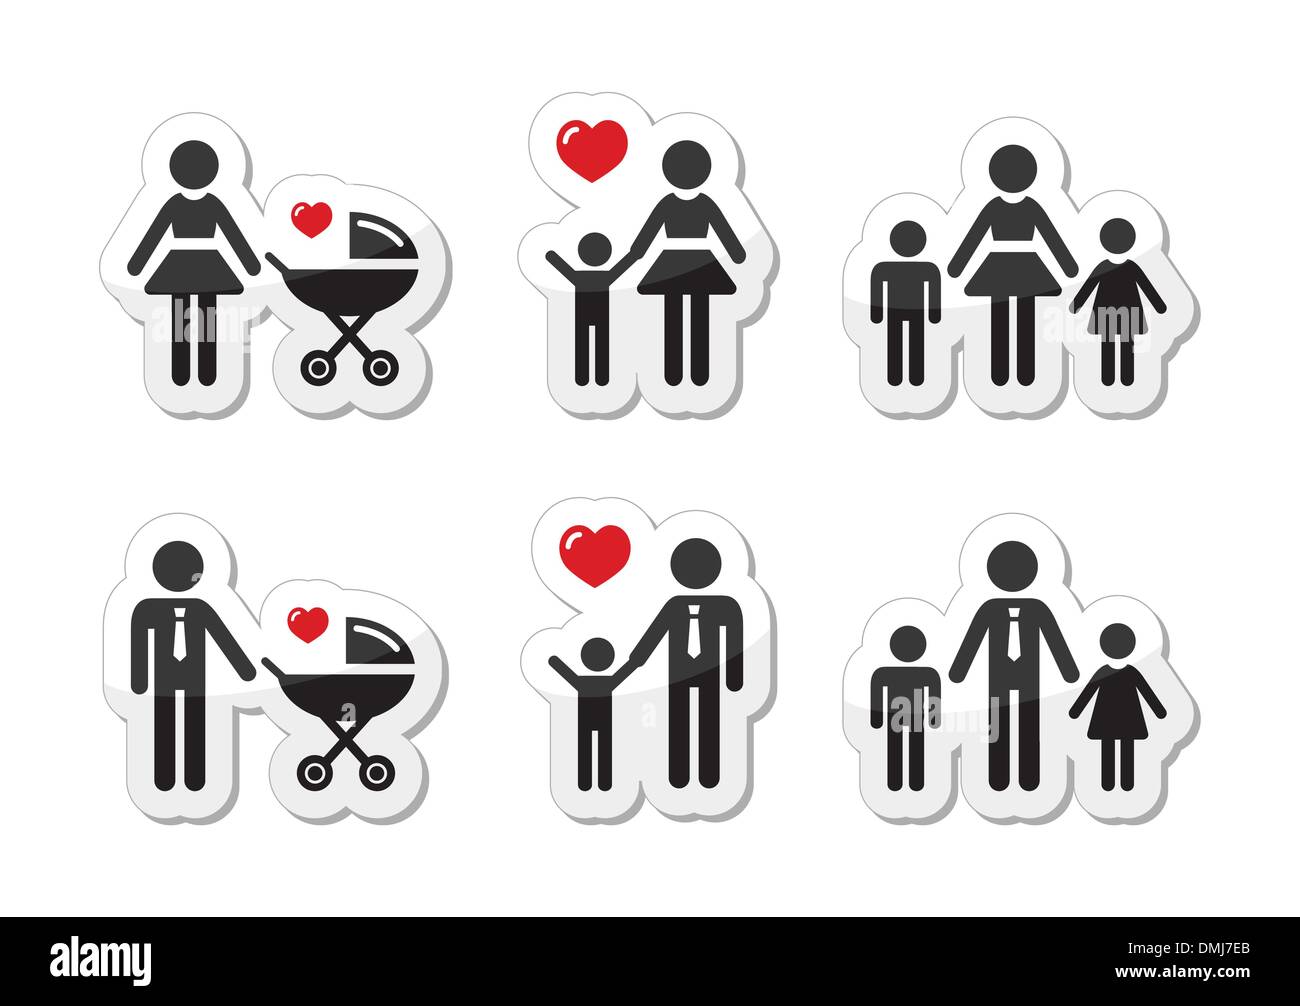 Genitore Single sign - icone familiari come etichette Illustrazione Vettoriale